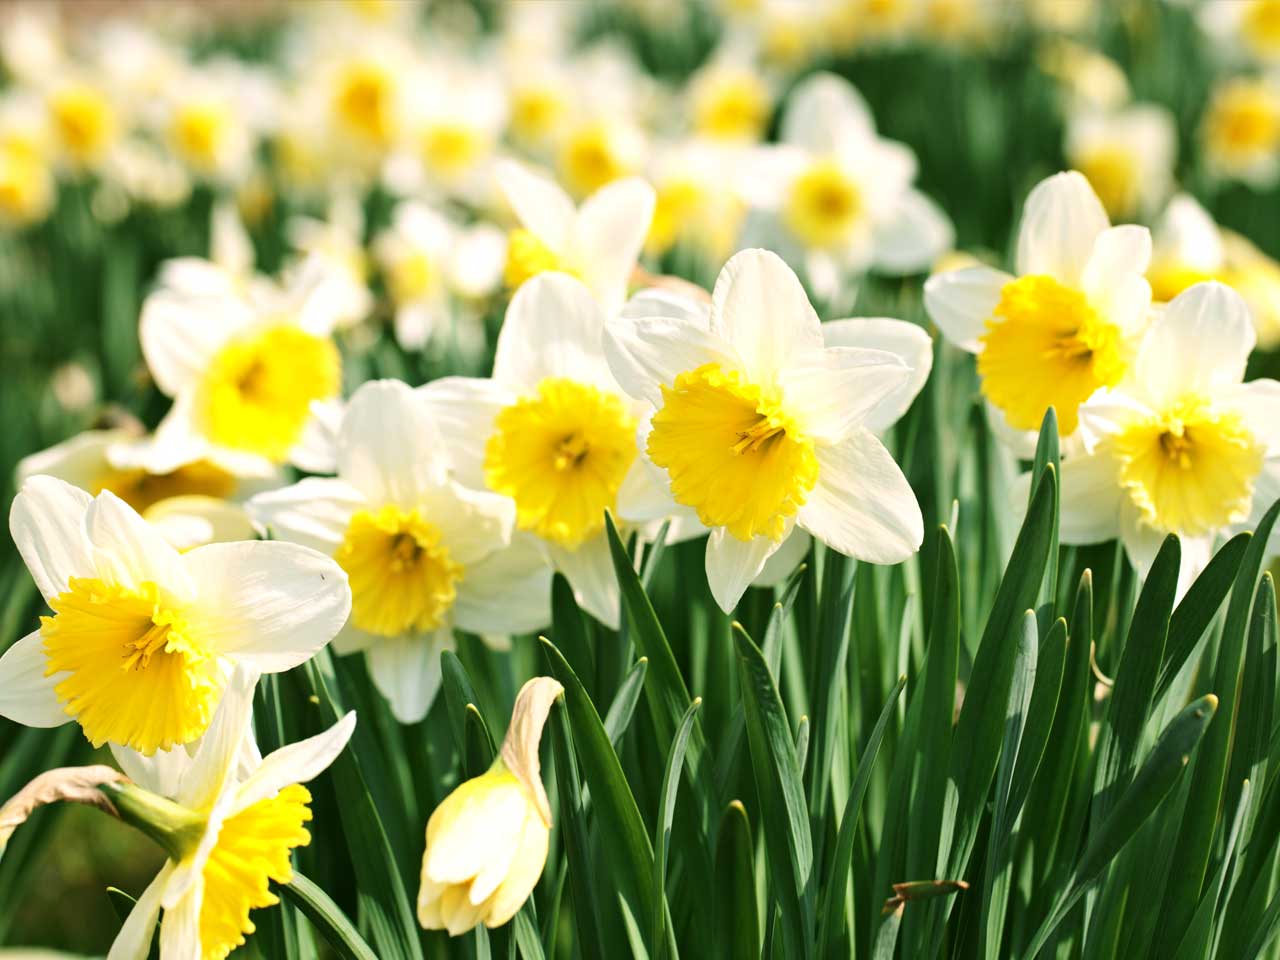 Daffodils plants